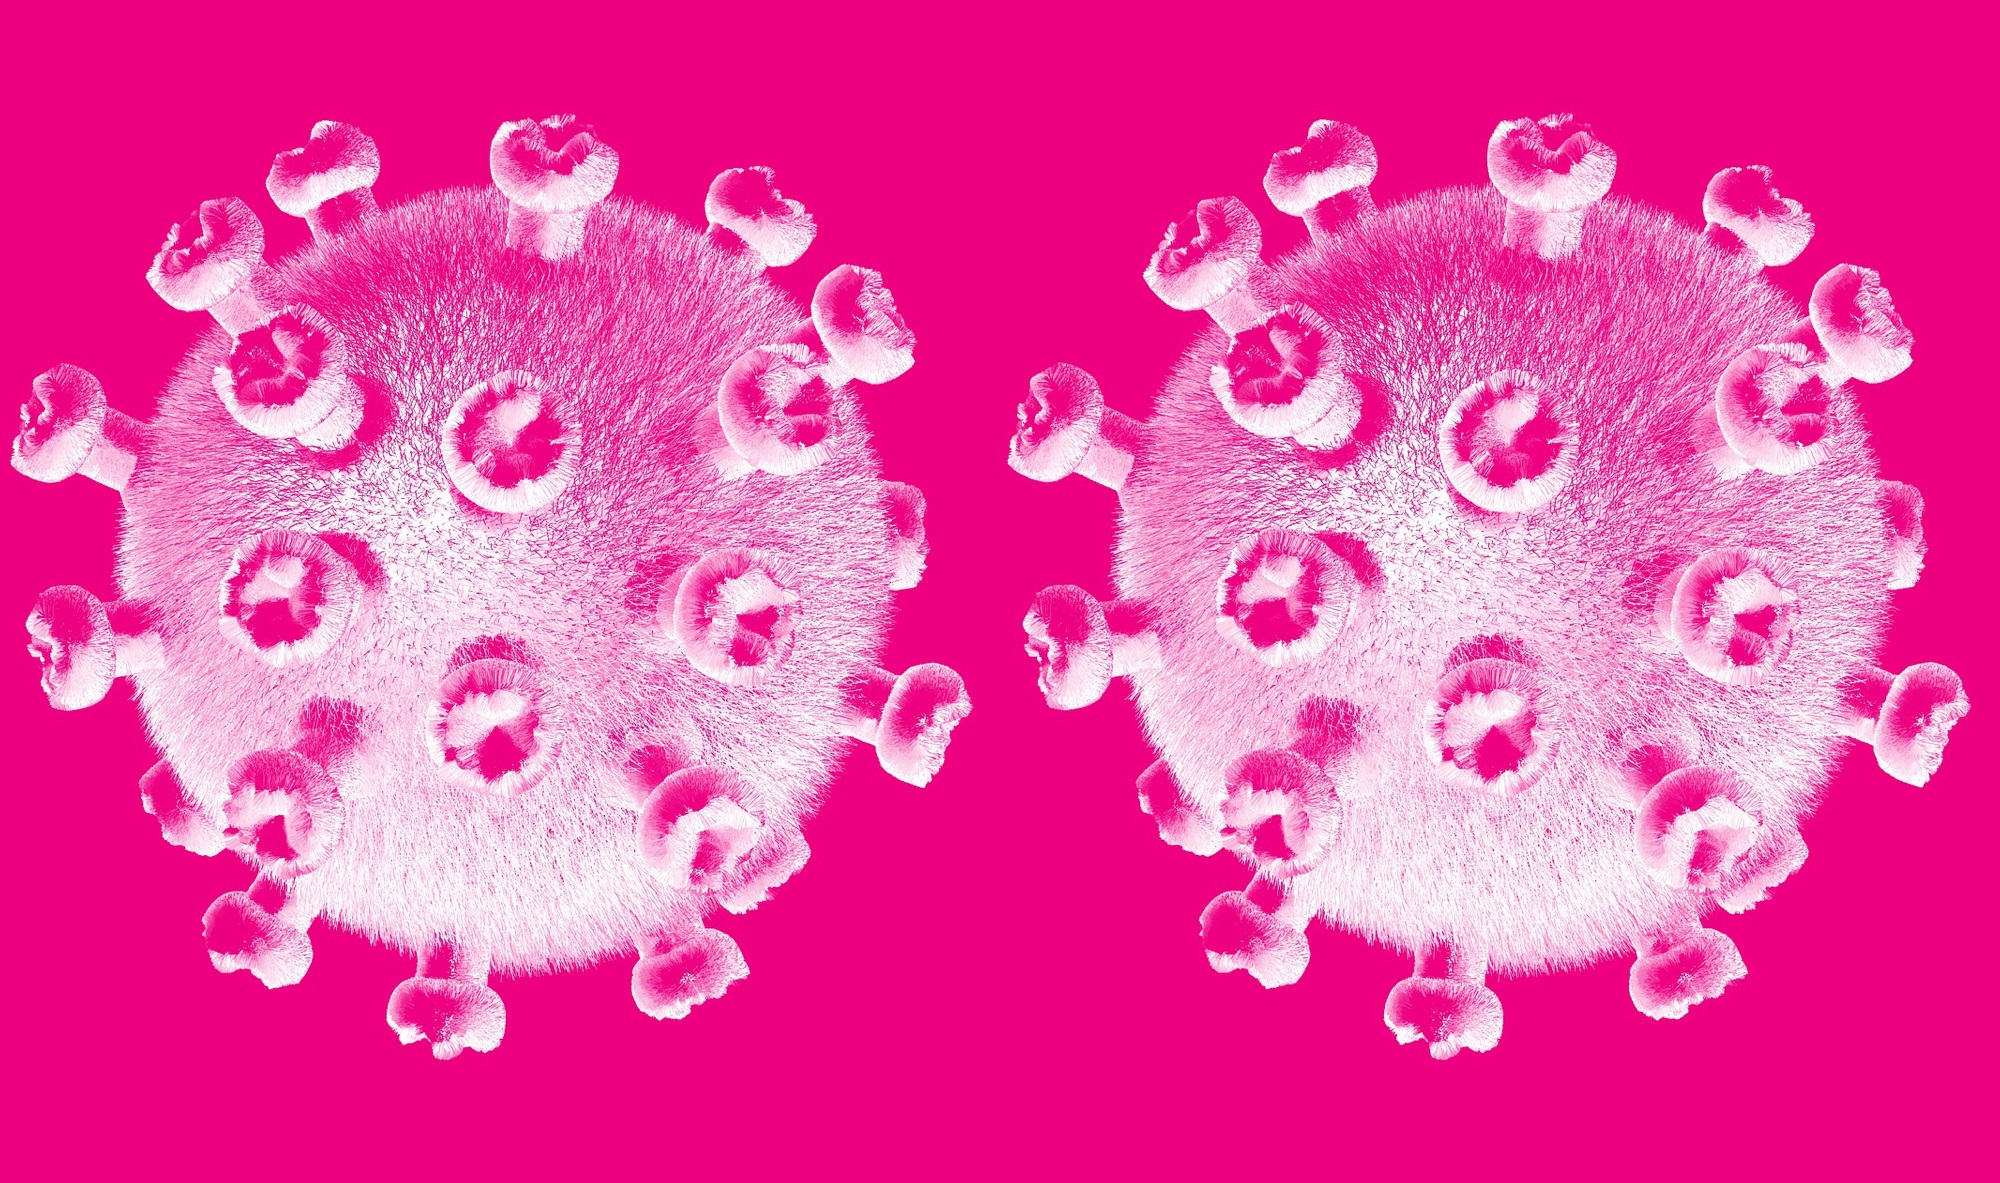 Le coronavirus du SARS-CoV-2 est possiblement le résultat d'une recombinaison de deux autres coronavirus. © cromaconceptovisual, Pixabay